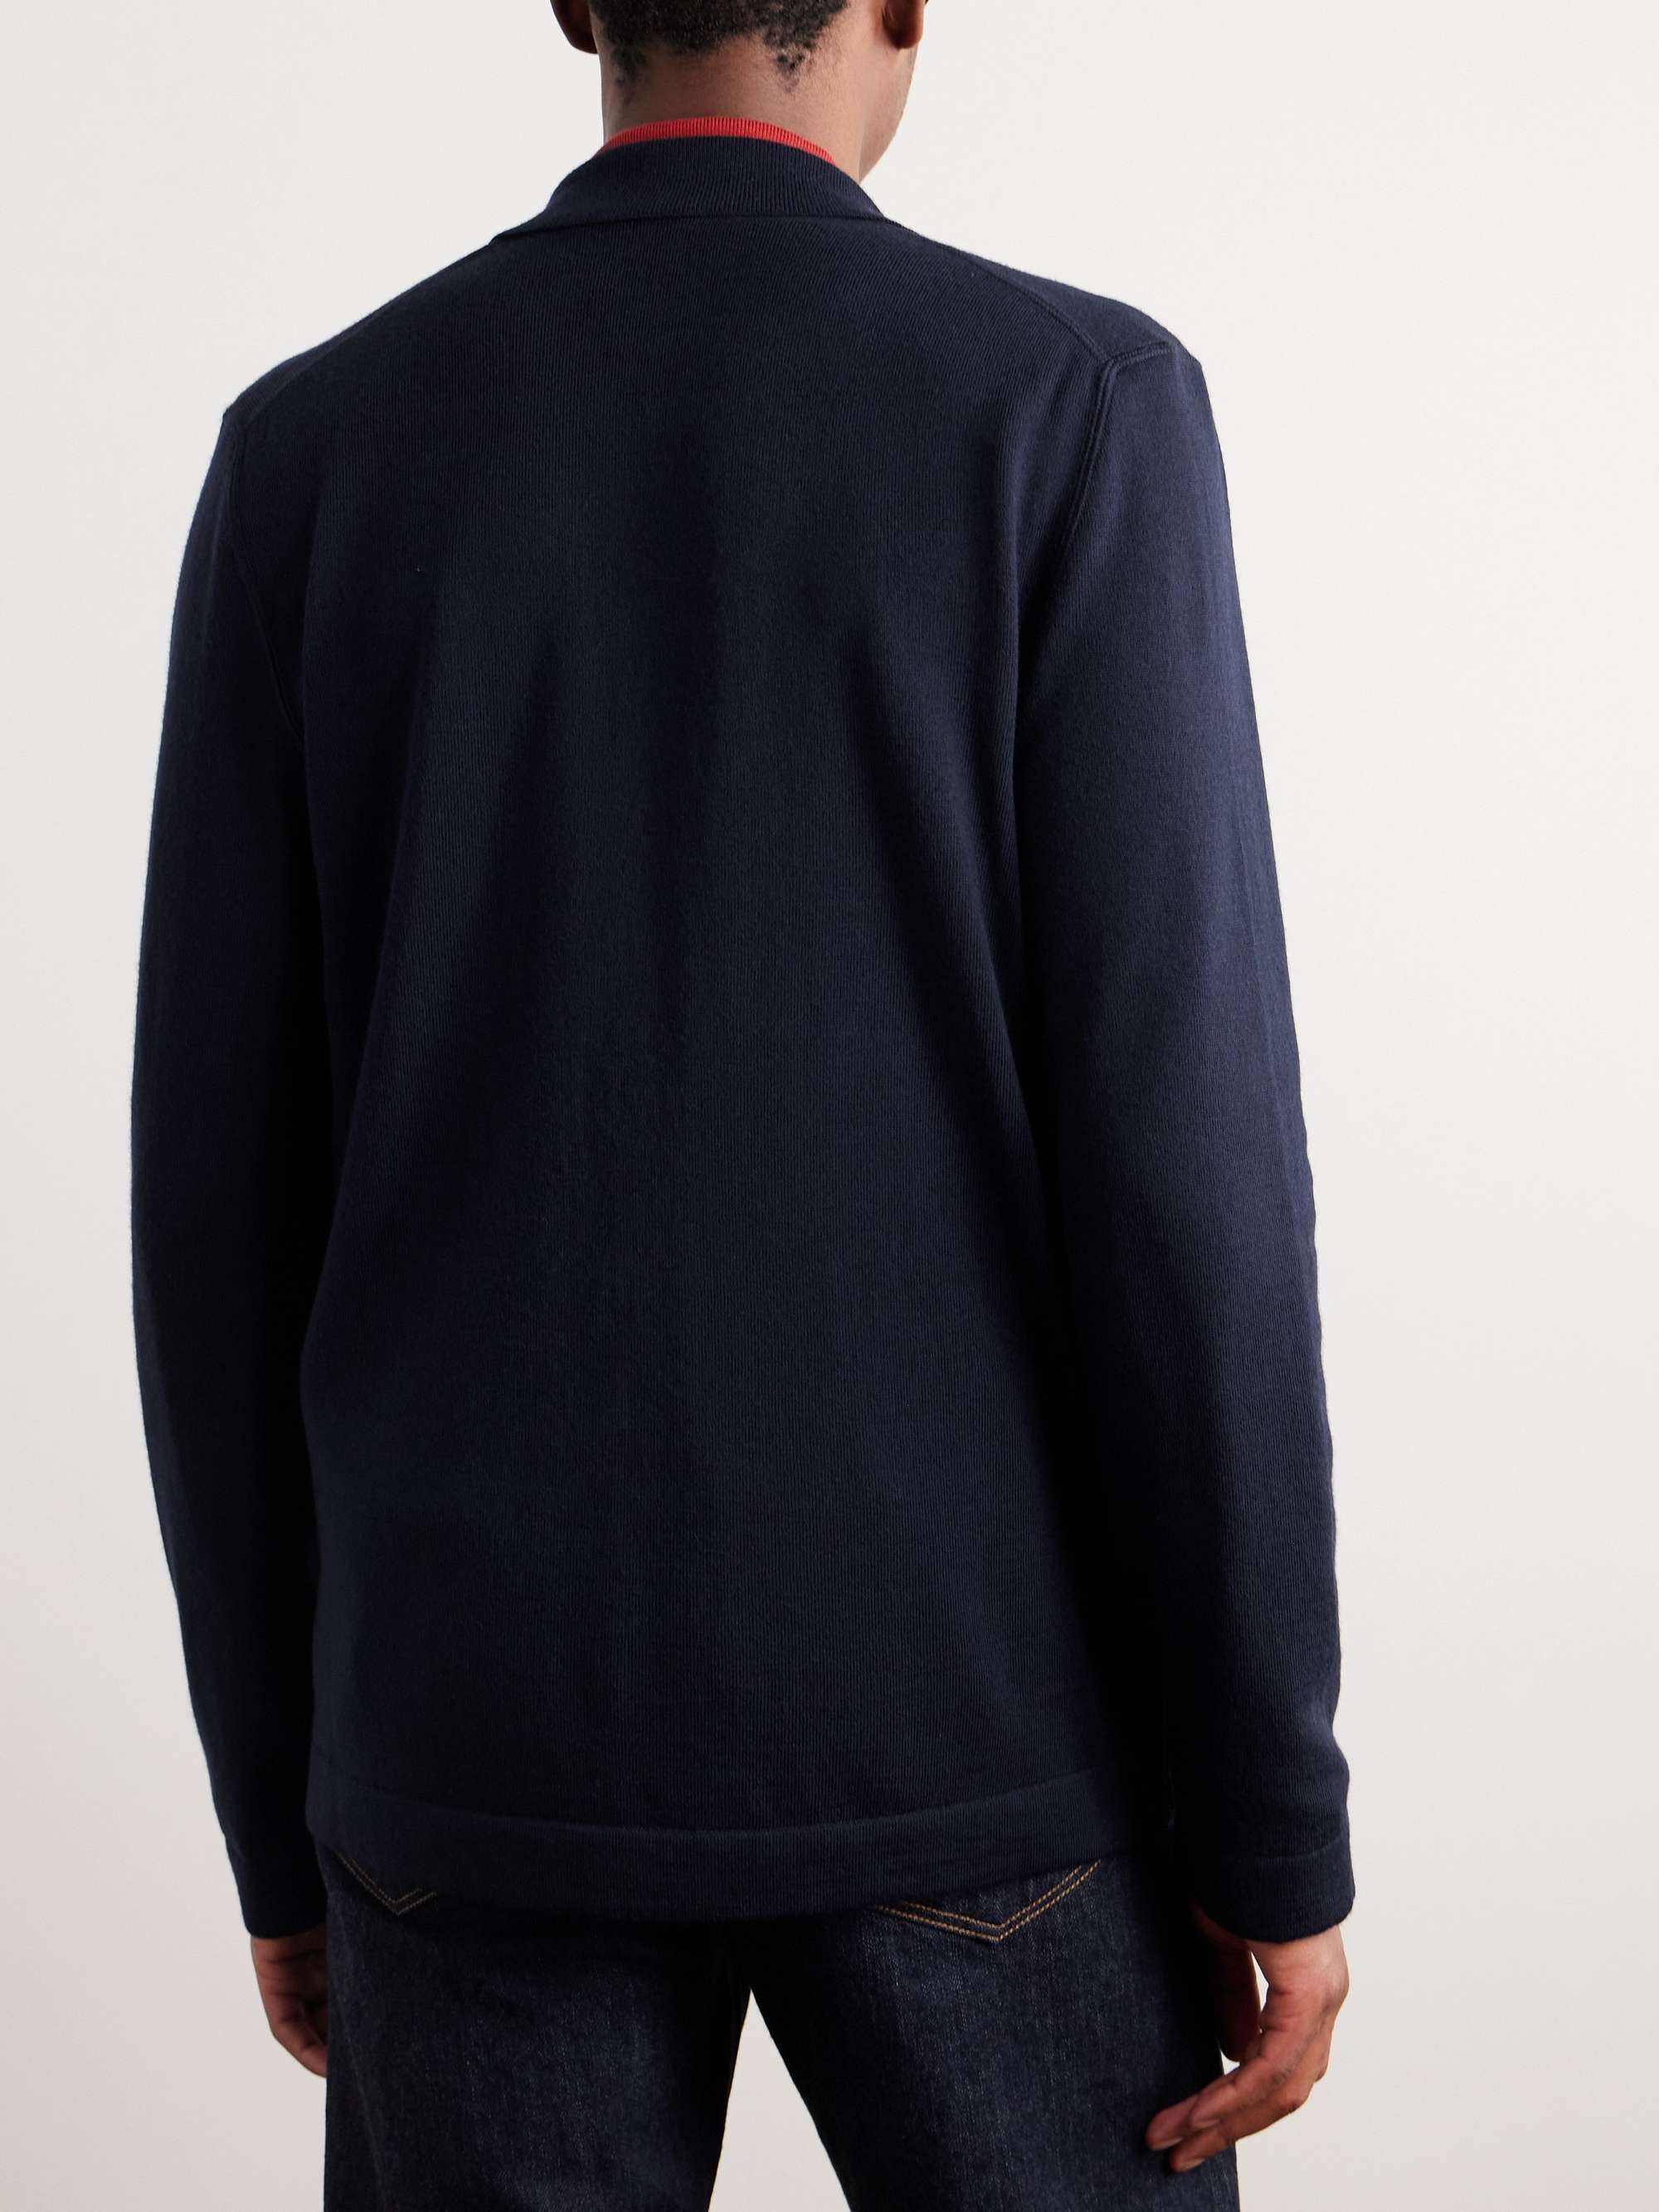 MR P. Knitted Merino Wool Blazer for Men | MR PORTER